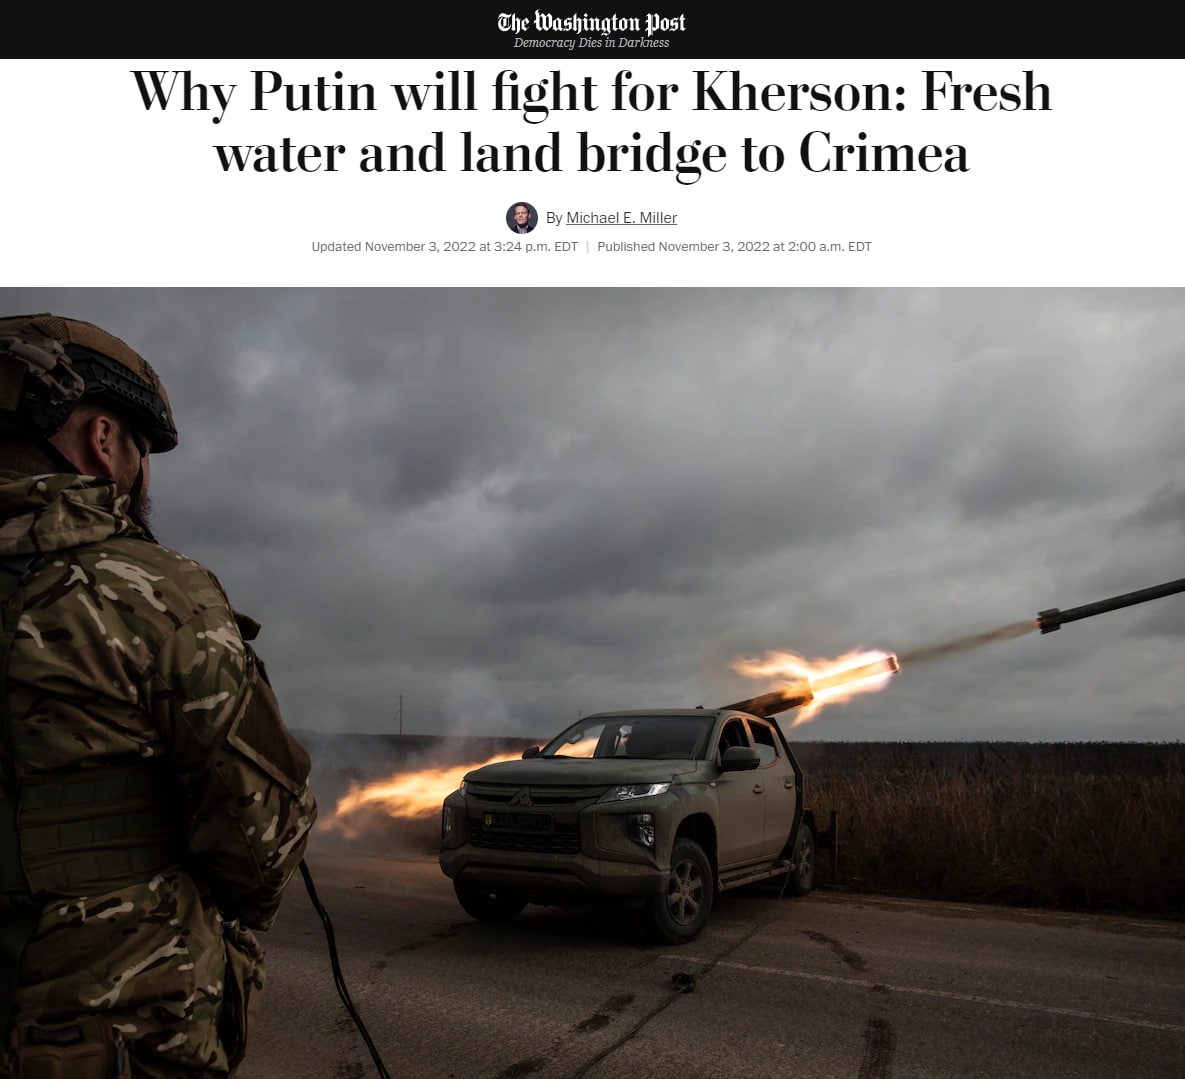 Херсон для Путина является самой большой победой с начала войны, поэтому он будет бросать все силы на оборону города - The Washington Post